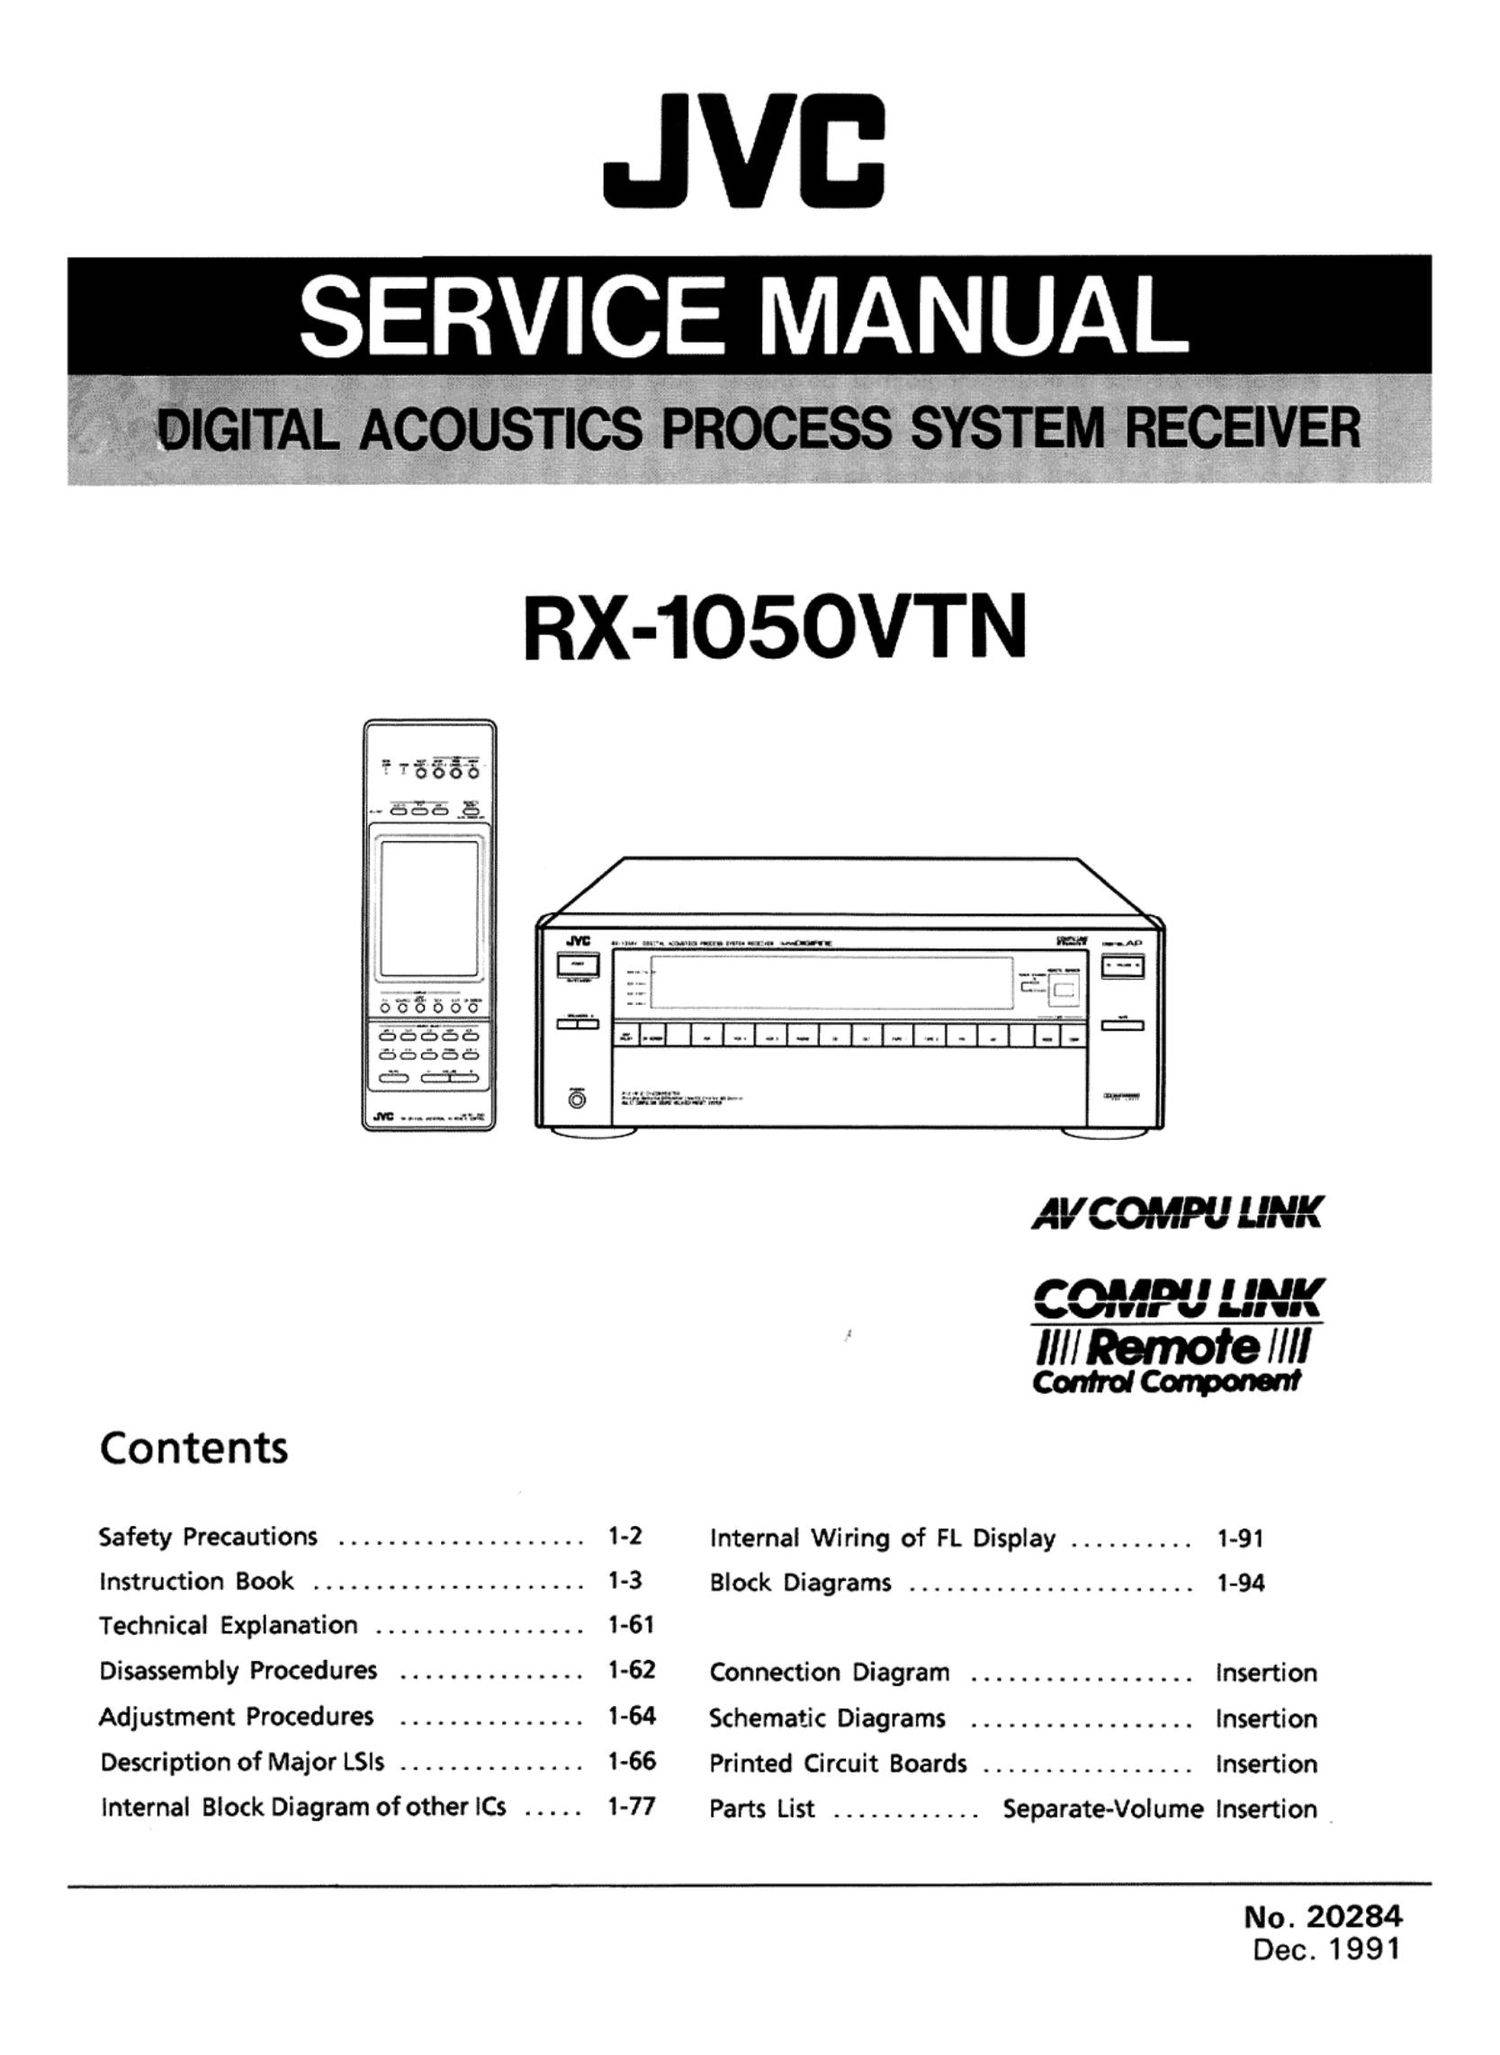 JVC RX-1050V (VTN)